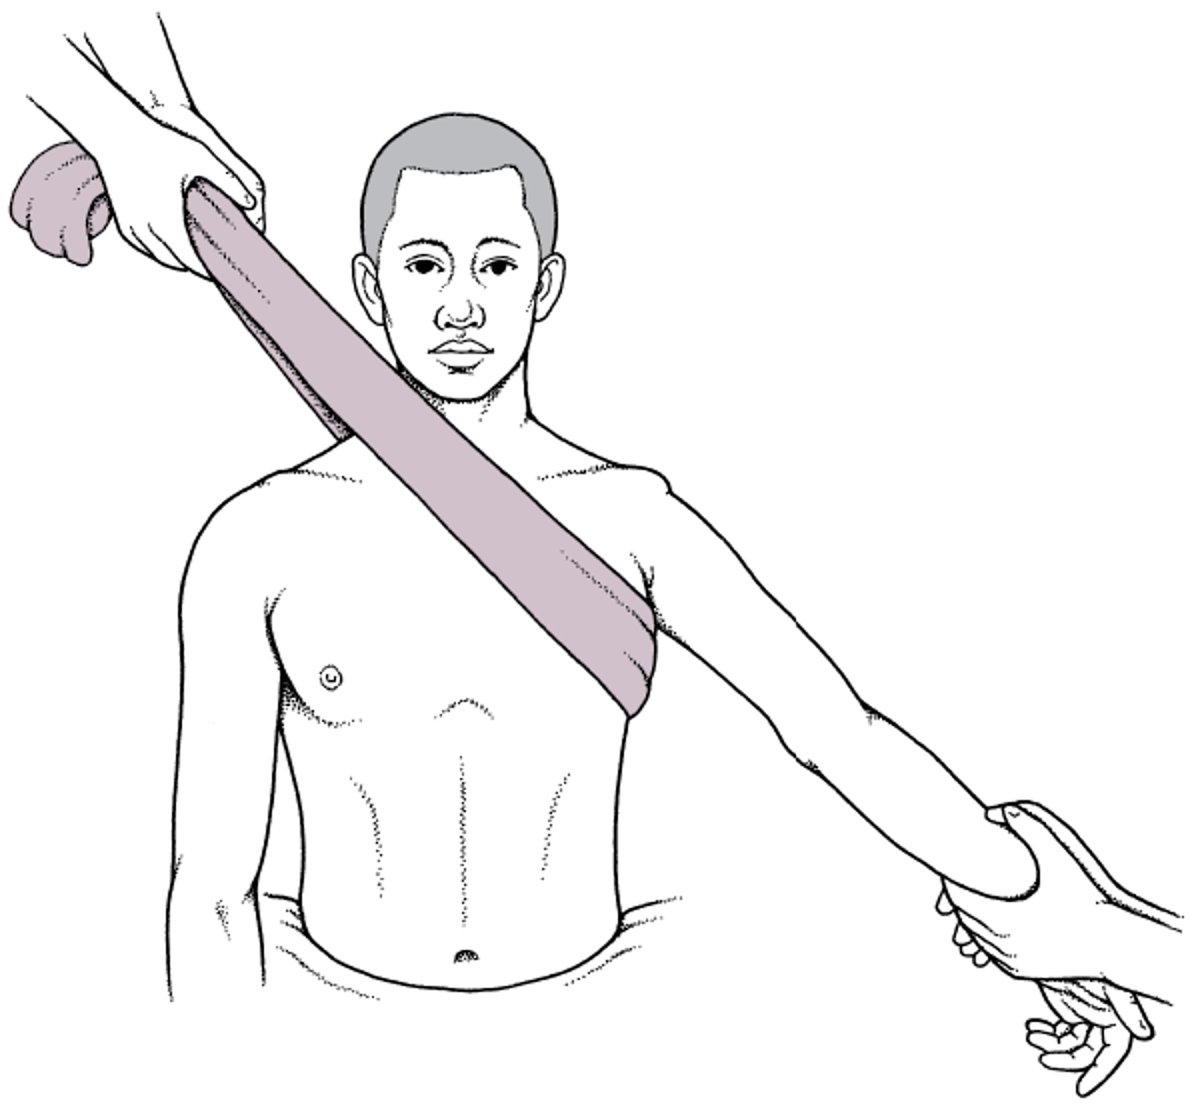 Técnica de tracción-contratracción para la reducción de las luxaciones anteriores del hombro